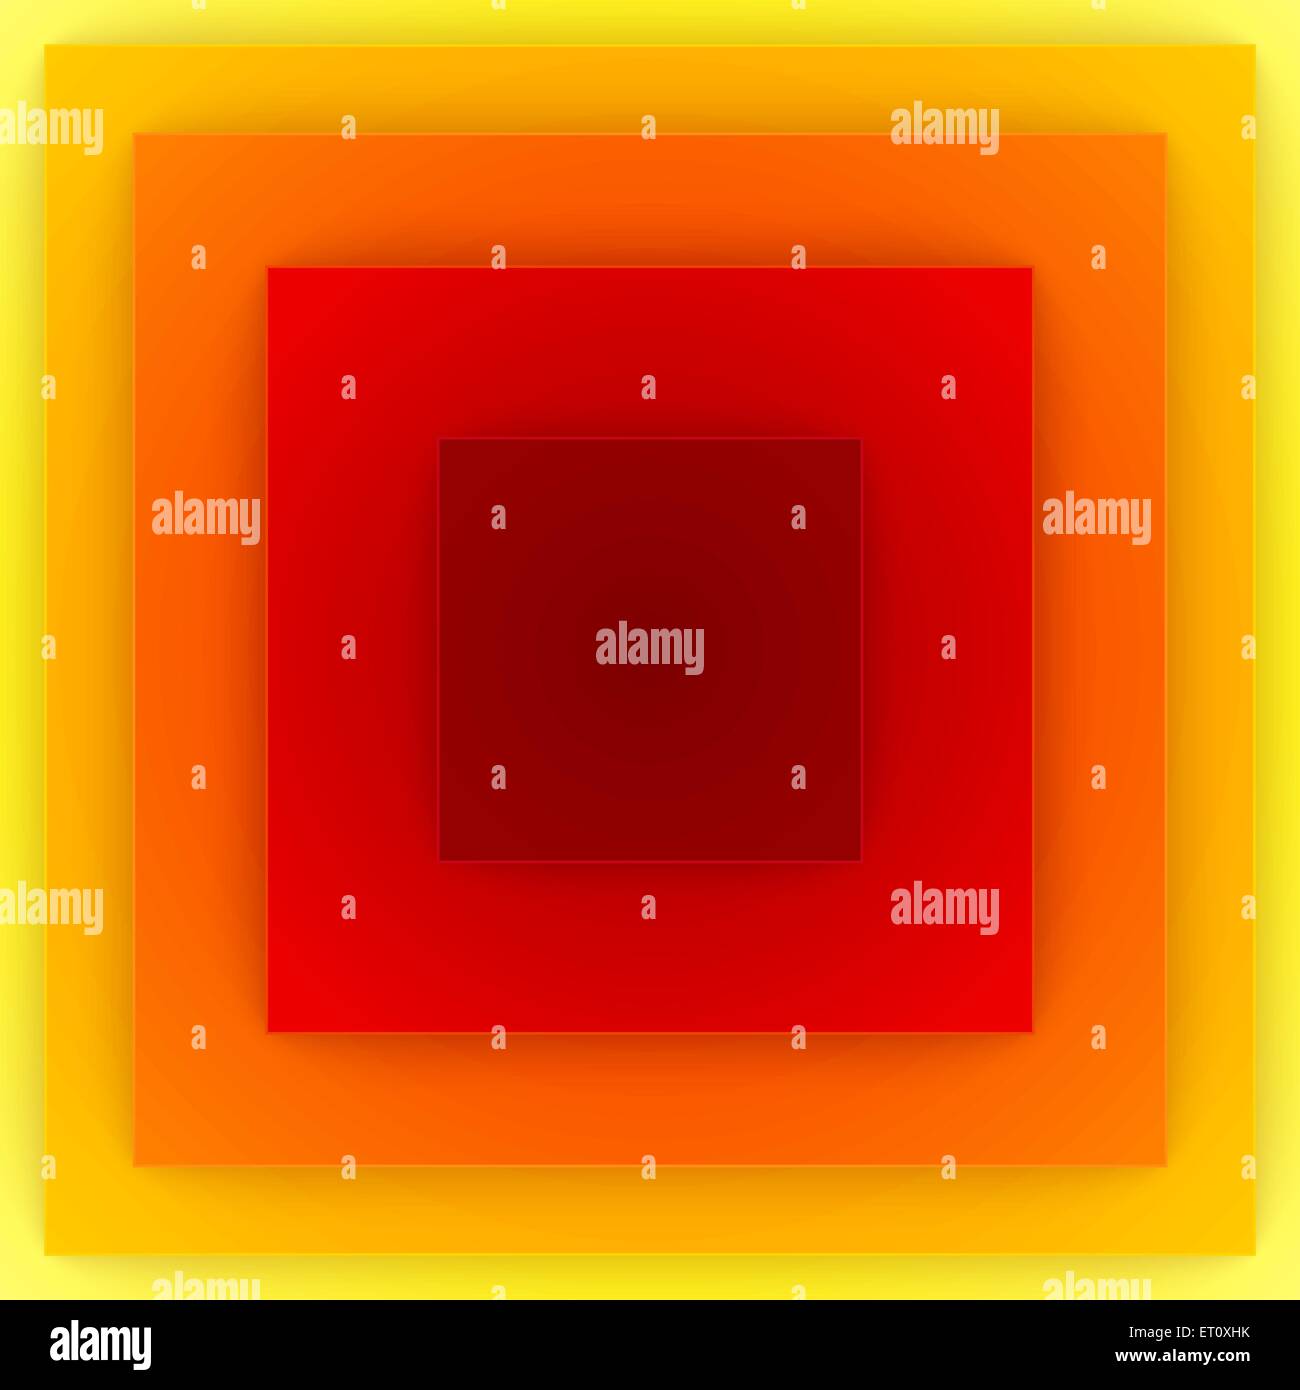 Rouge, orange et jaune des couches de papier résumé fond. 10 illustration vecteur EPS RVB Illustration de Vecteur